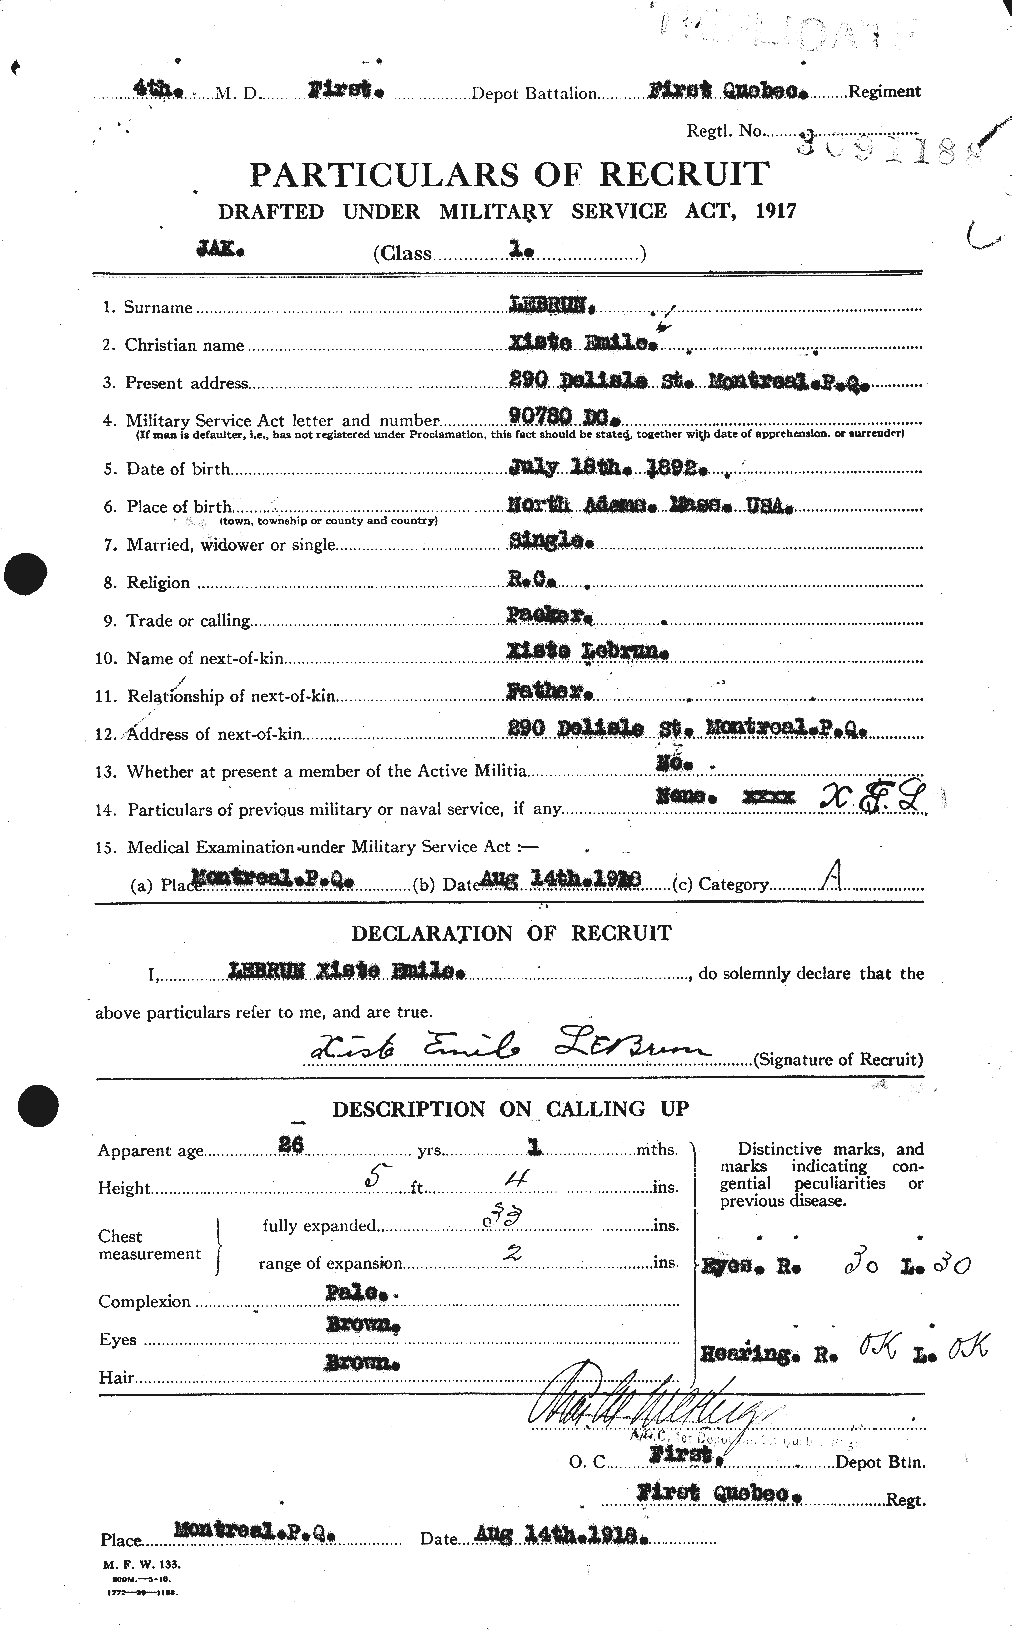 Dossiers du Personnel de la Première Guerre mondiale - CEC 461594a